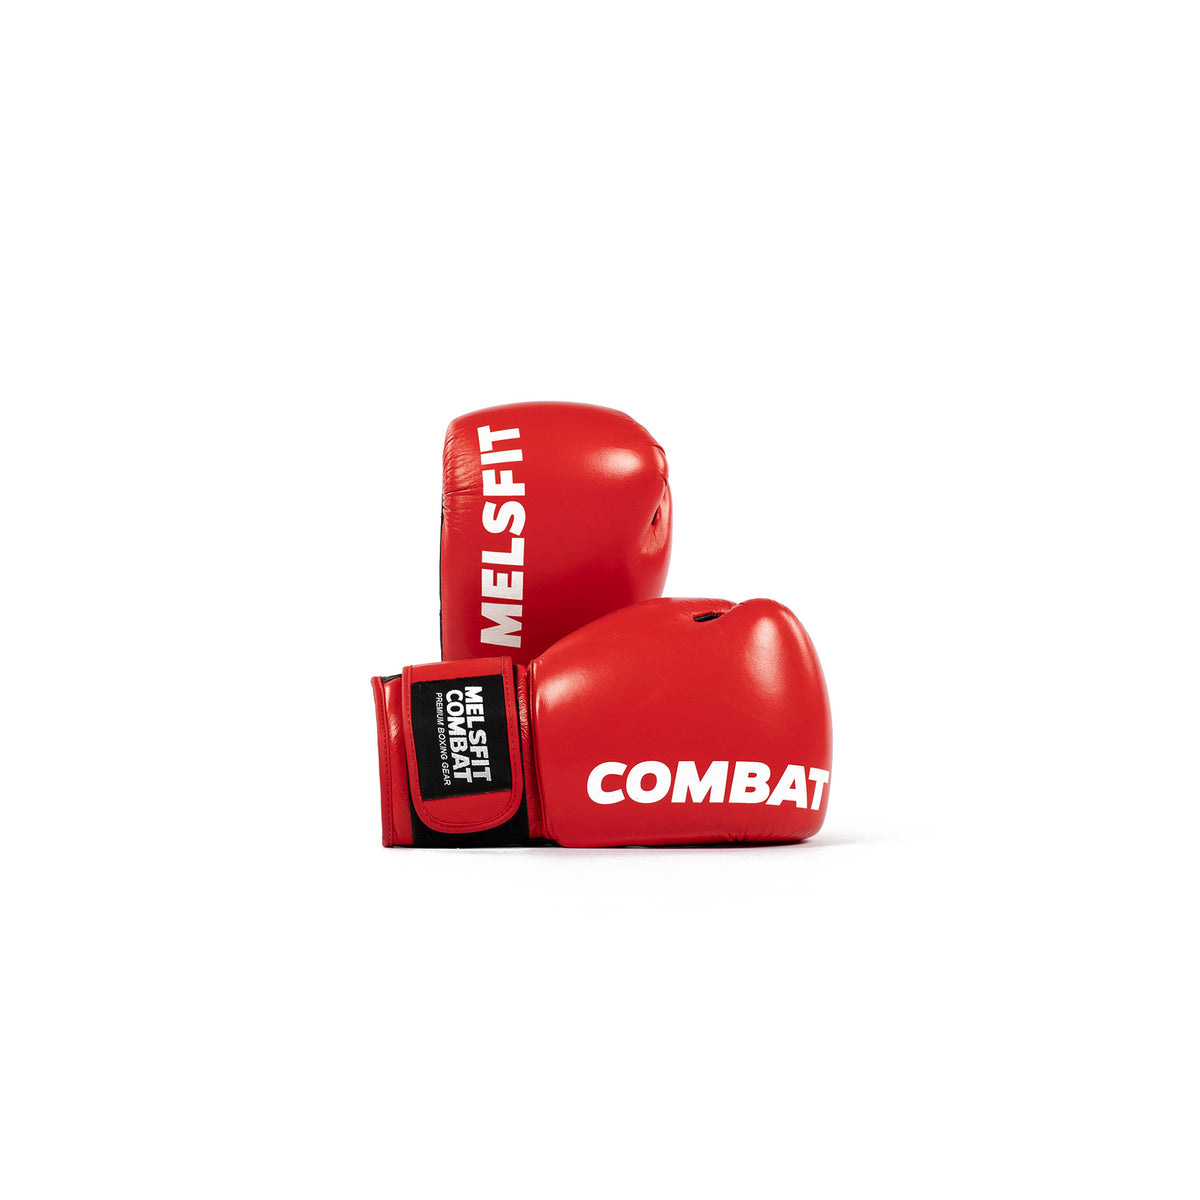 Premium boxing gloves